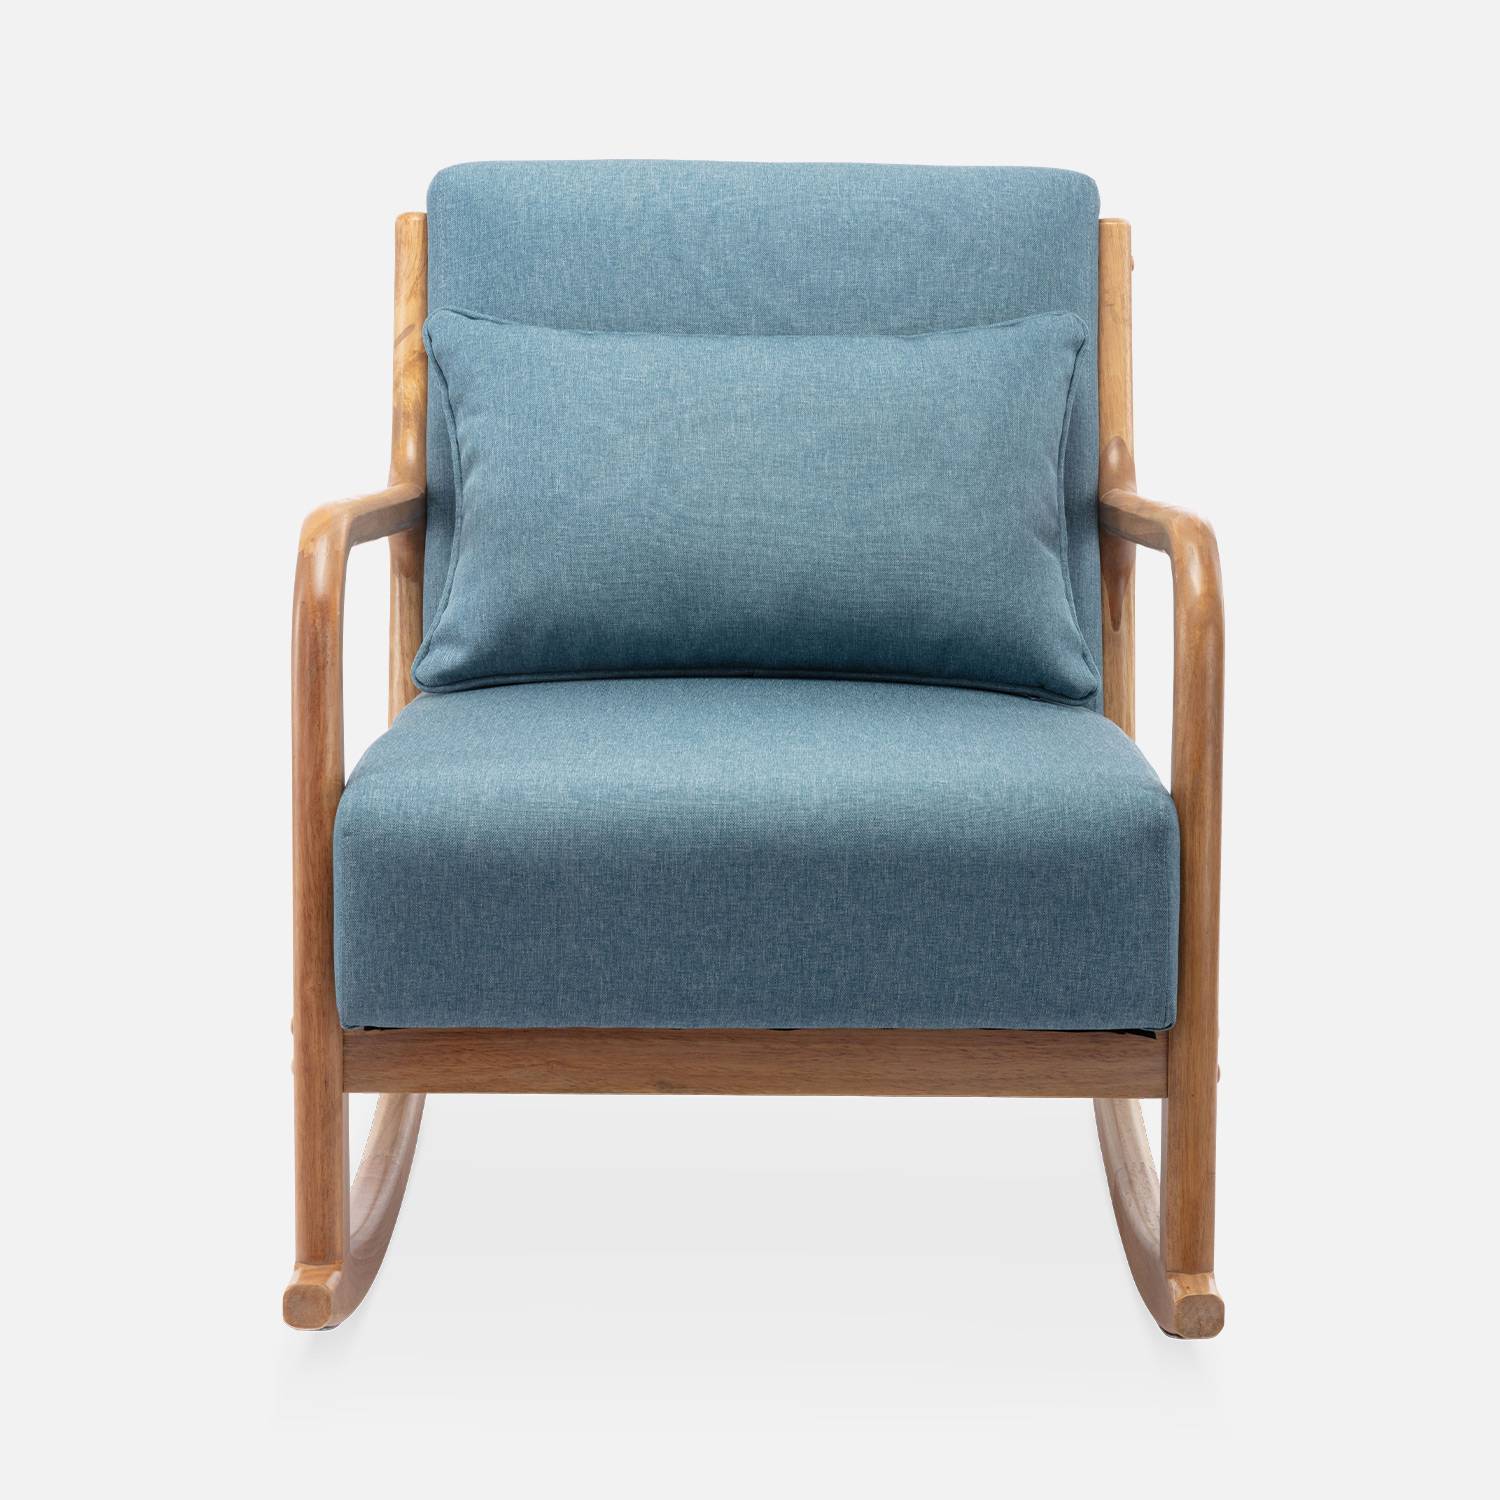 Cadeira de baloiço de design em madeira e tecido, 1 lugar, cadeira de baloiço escandinava, azul,sweeek,Photo4